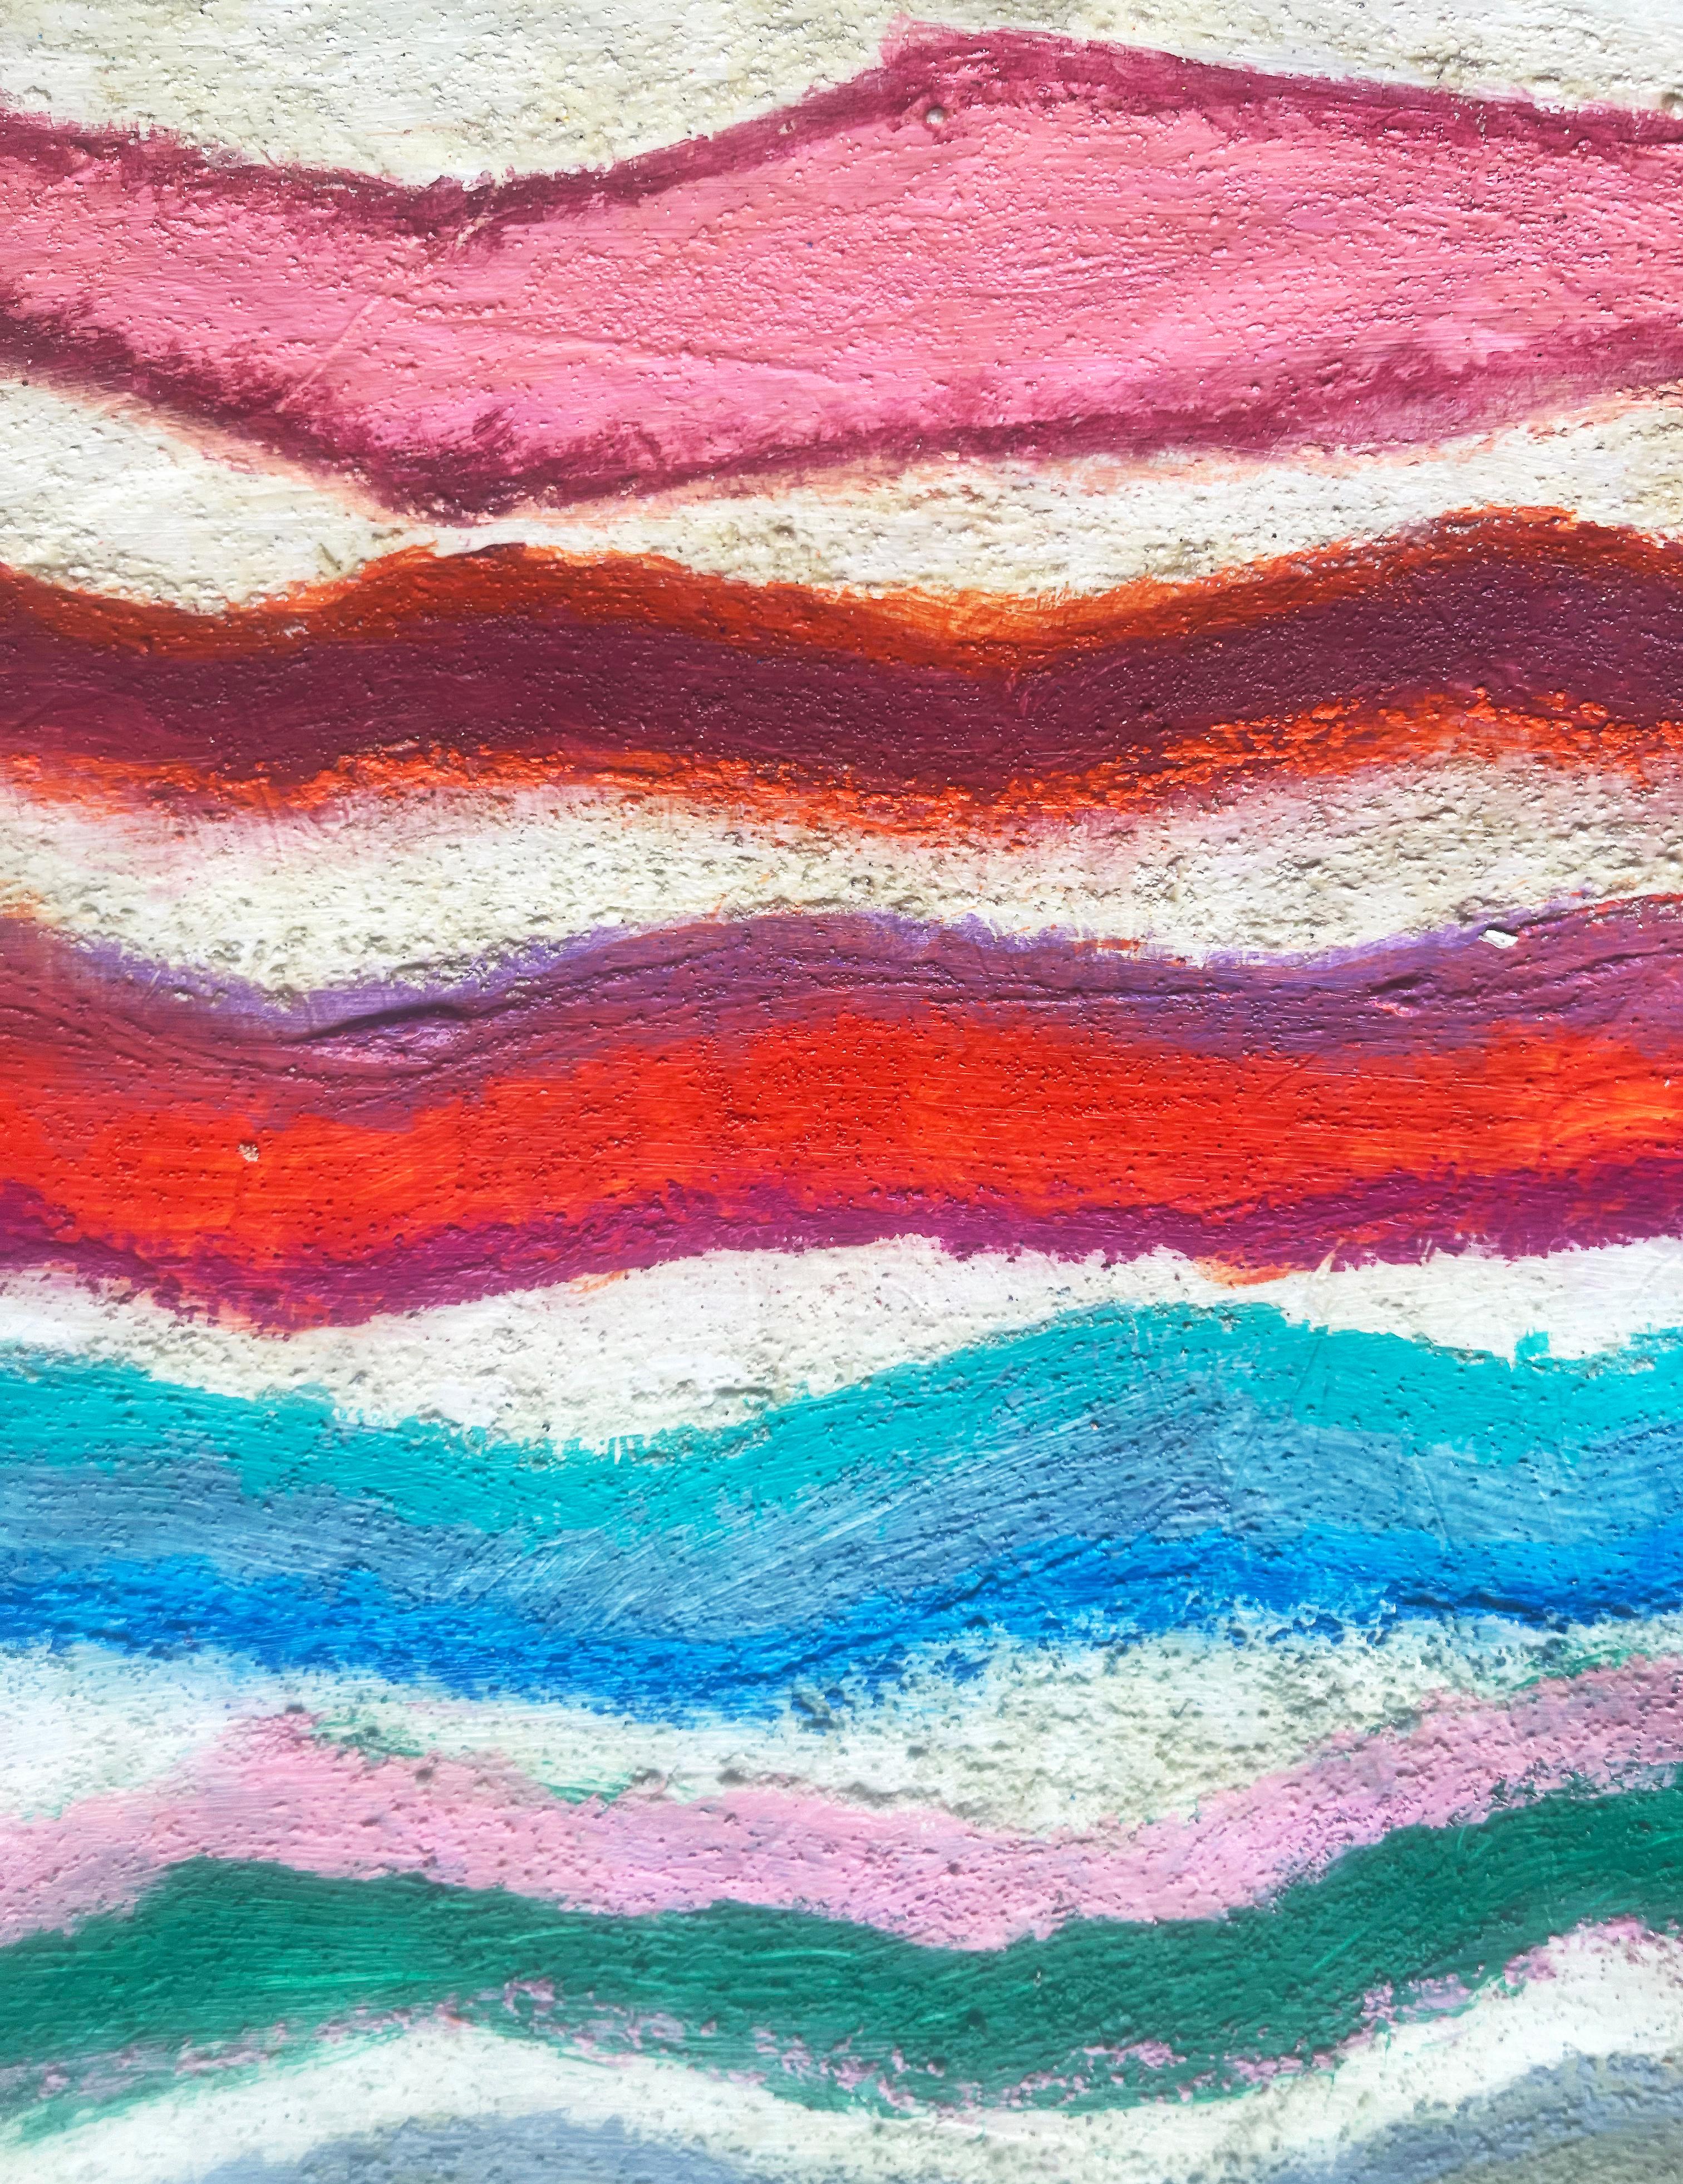 Waves, 2022 par a.muse est une peinture sur papier japonais washi. Dans cet art coloré sur papier, l'artiste célèbre la couleur et le rythme à travers des lignes et des bandes d'orange, de rouge, d'aqua, de bleu et de vert entrelacées d'or et de